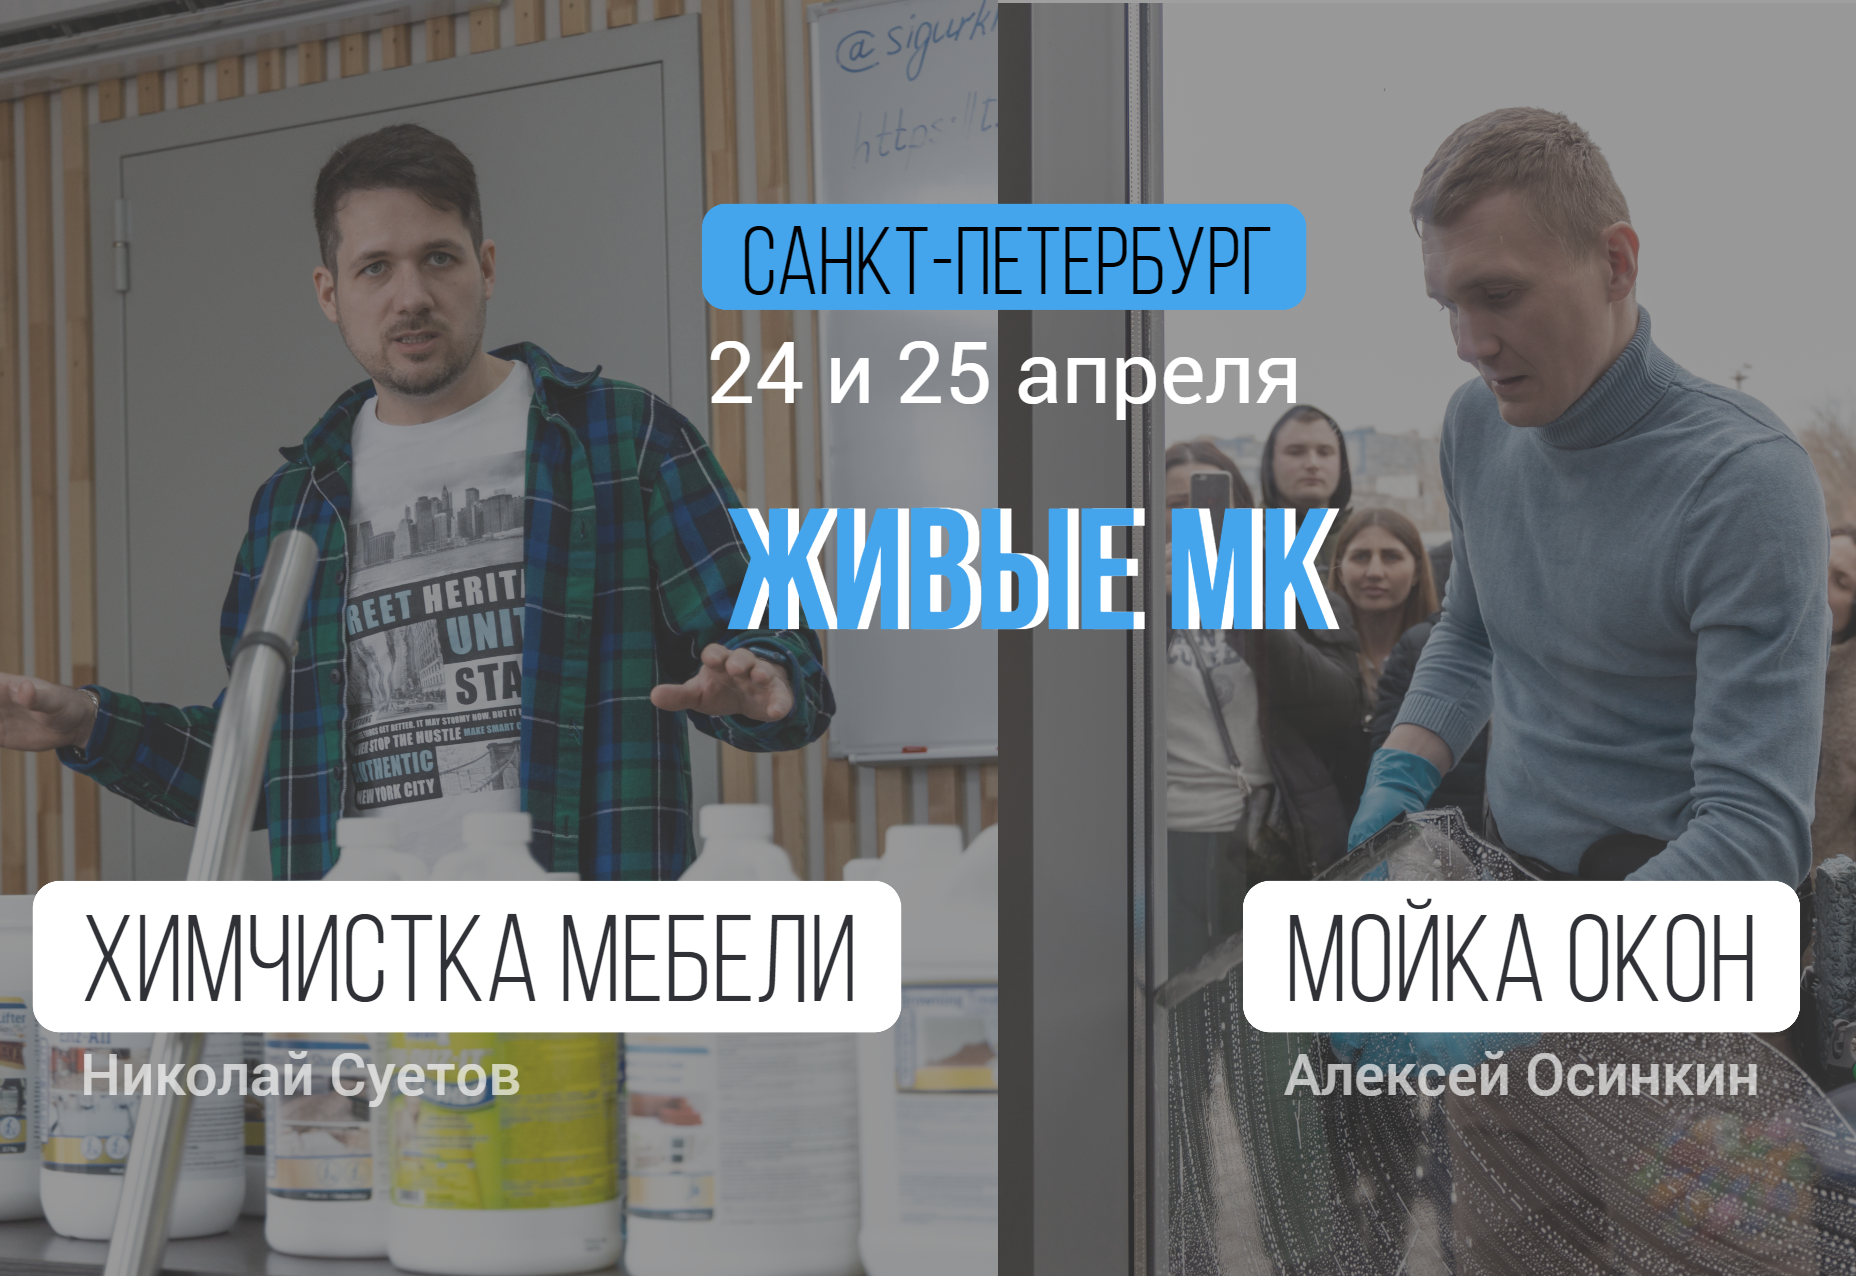 24- 25 апреля - мастер-классы от Алексея Осинкина и Николая Суетова